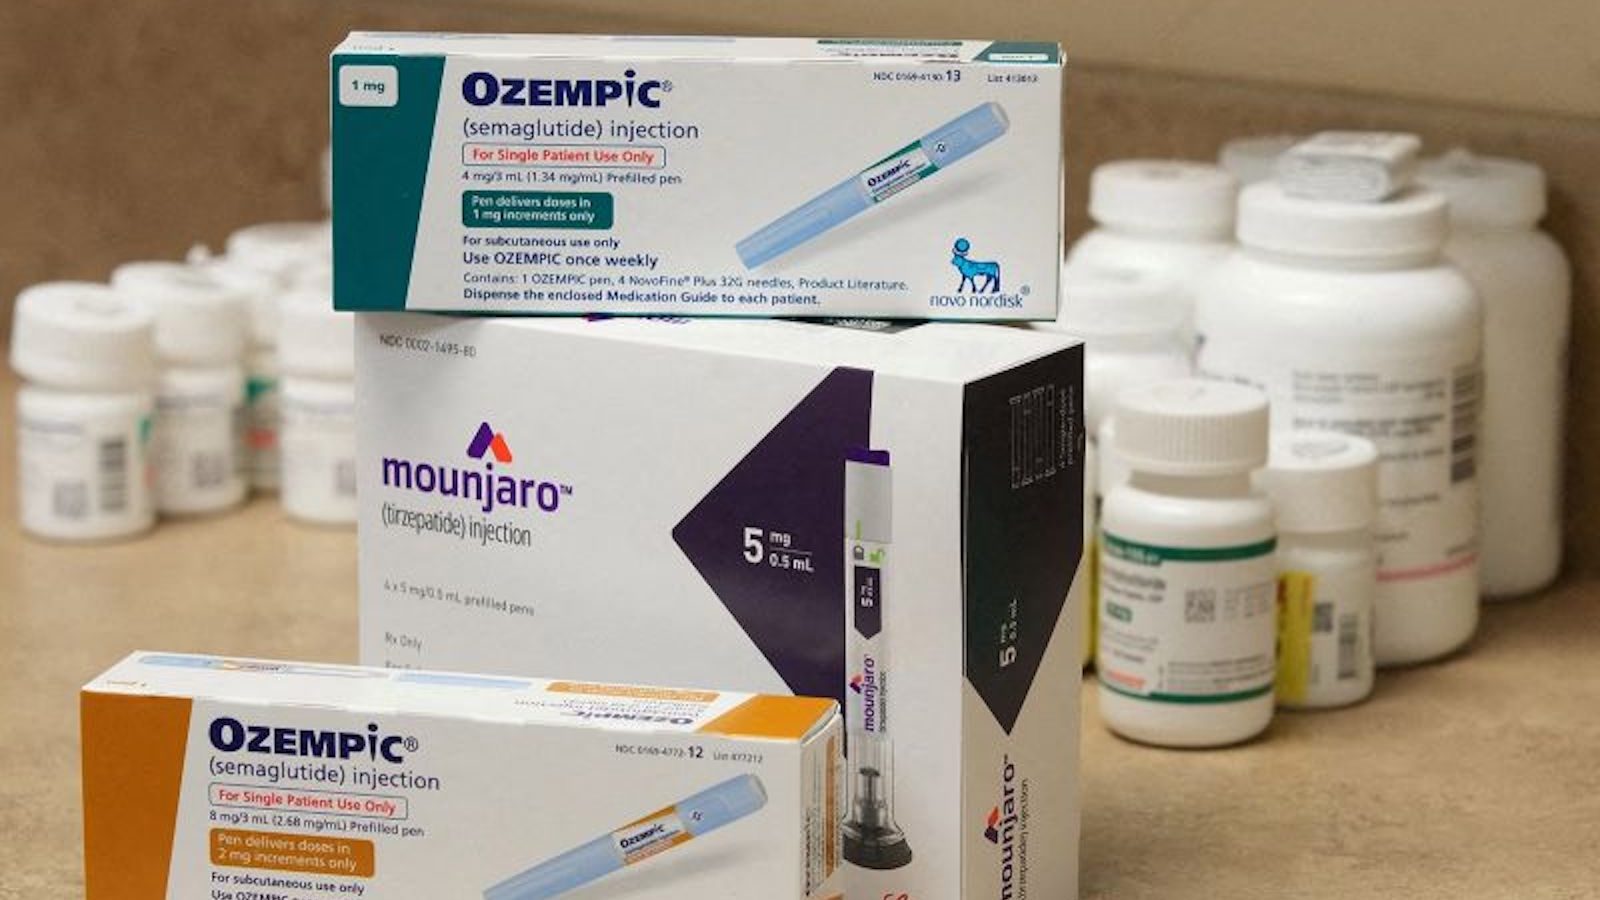 Aplastar Florecer Viaje El Ozempic, un tratamiento para tratar la diabetes, está arrasando en  China. Los fabricantes se afanan por aumentar el suministro